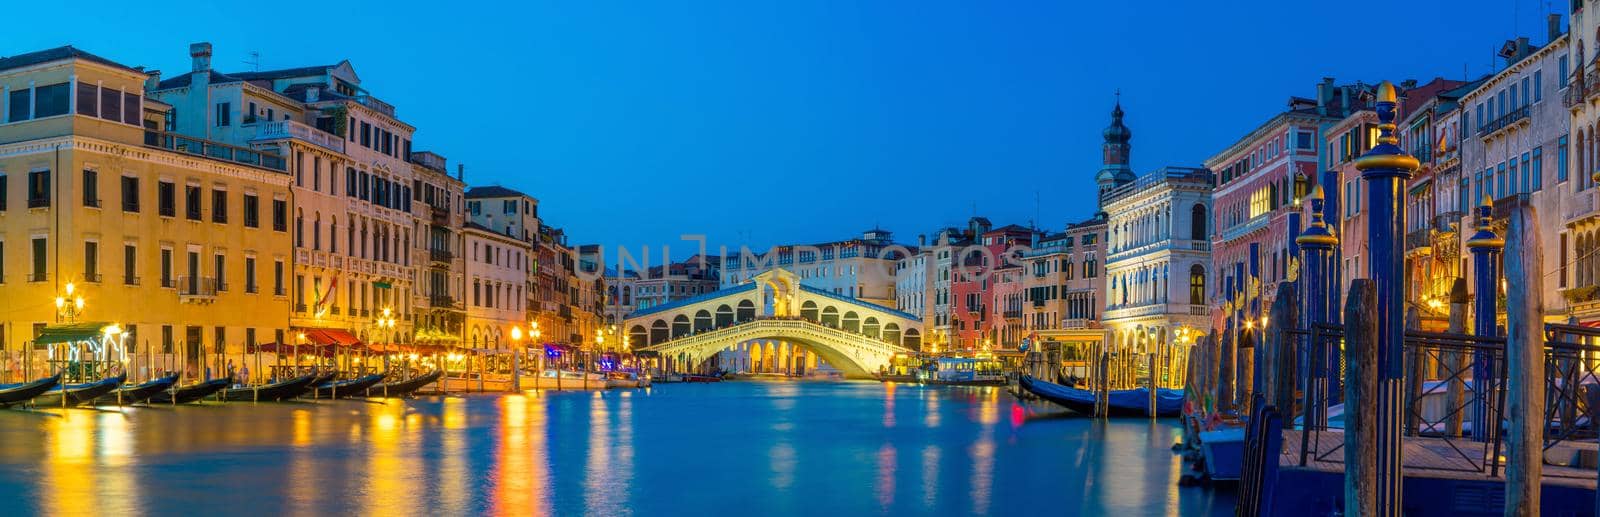 Rialto Bridge in Venice, Italy by f11photo